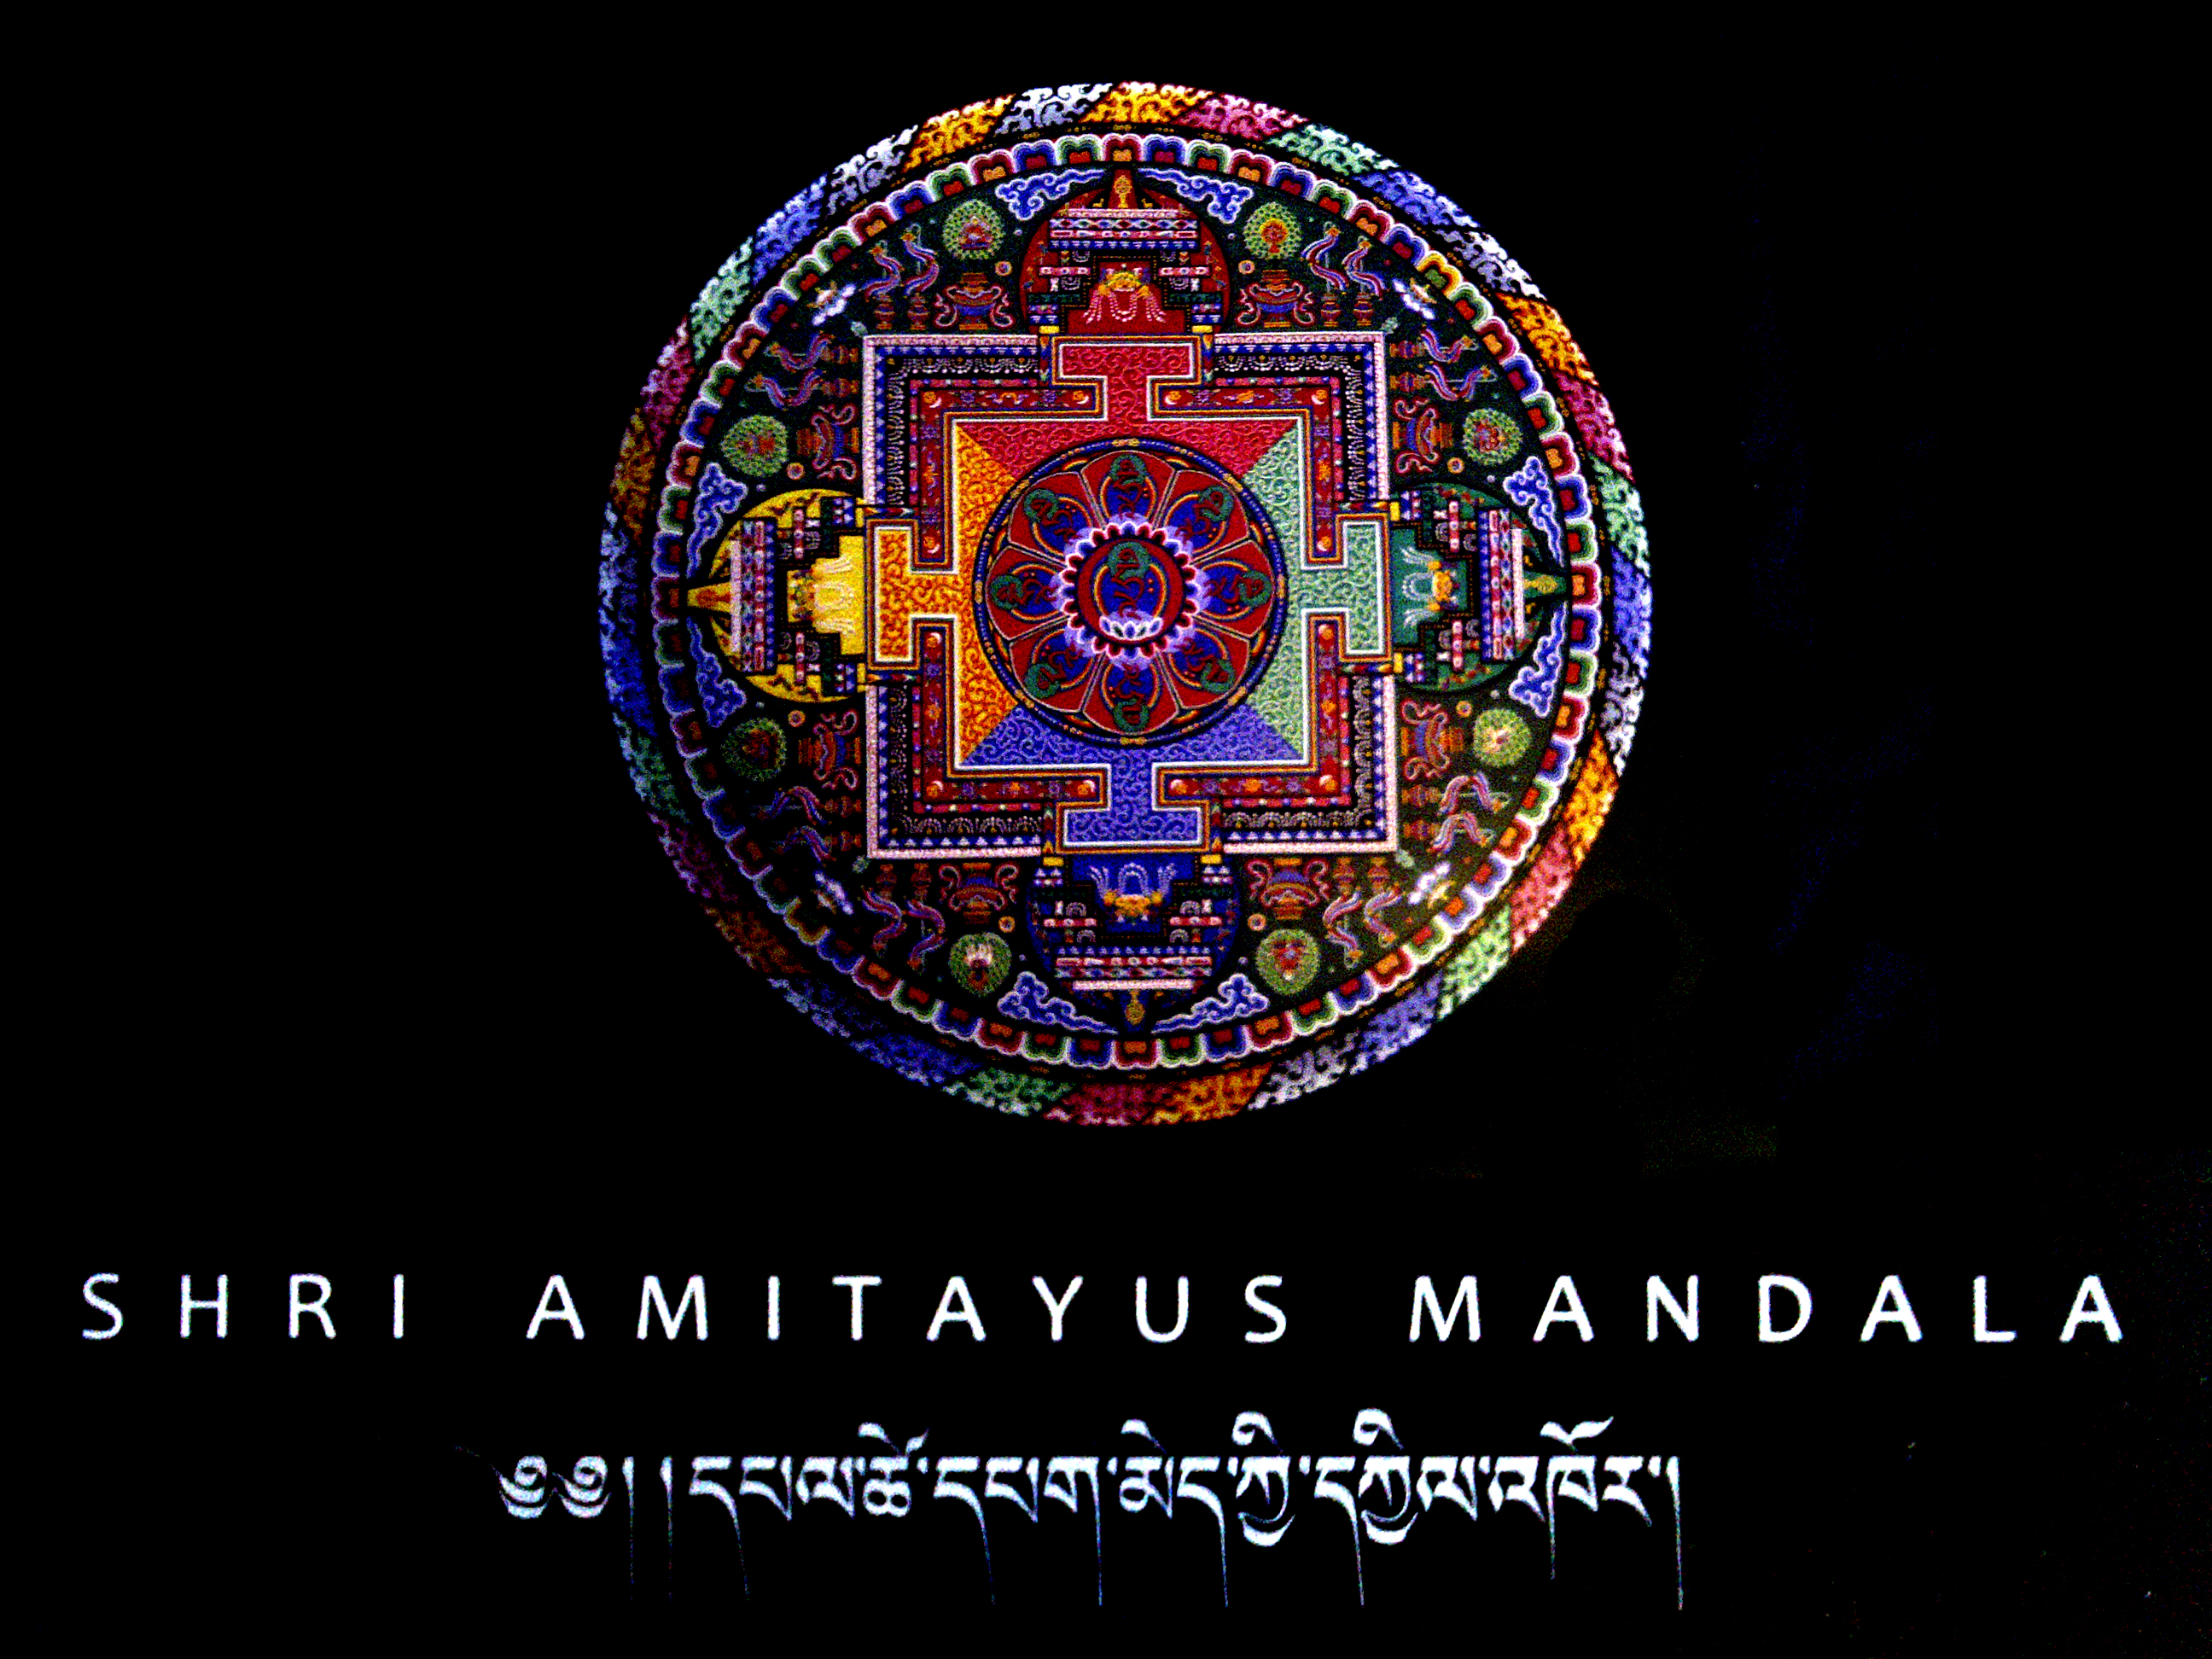 Mandala Amitayus